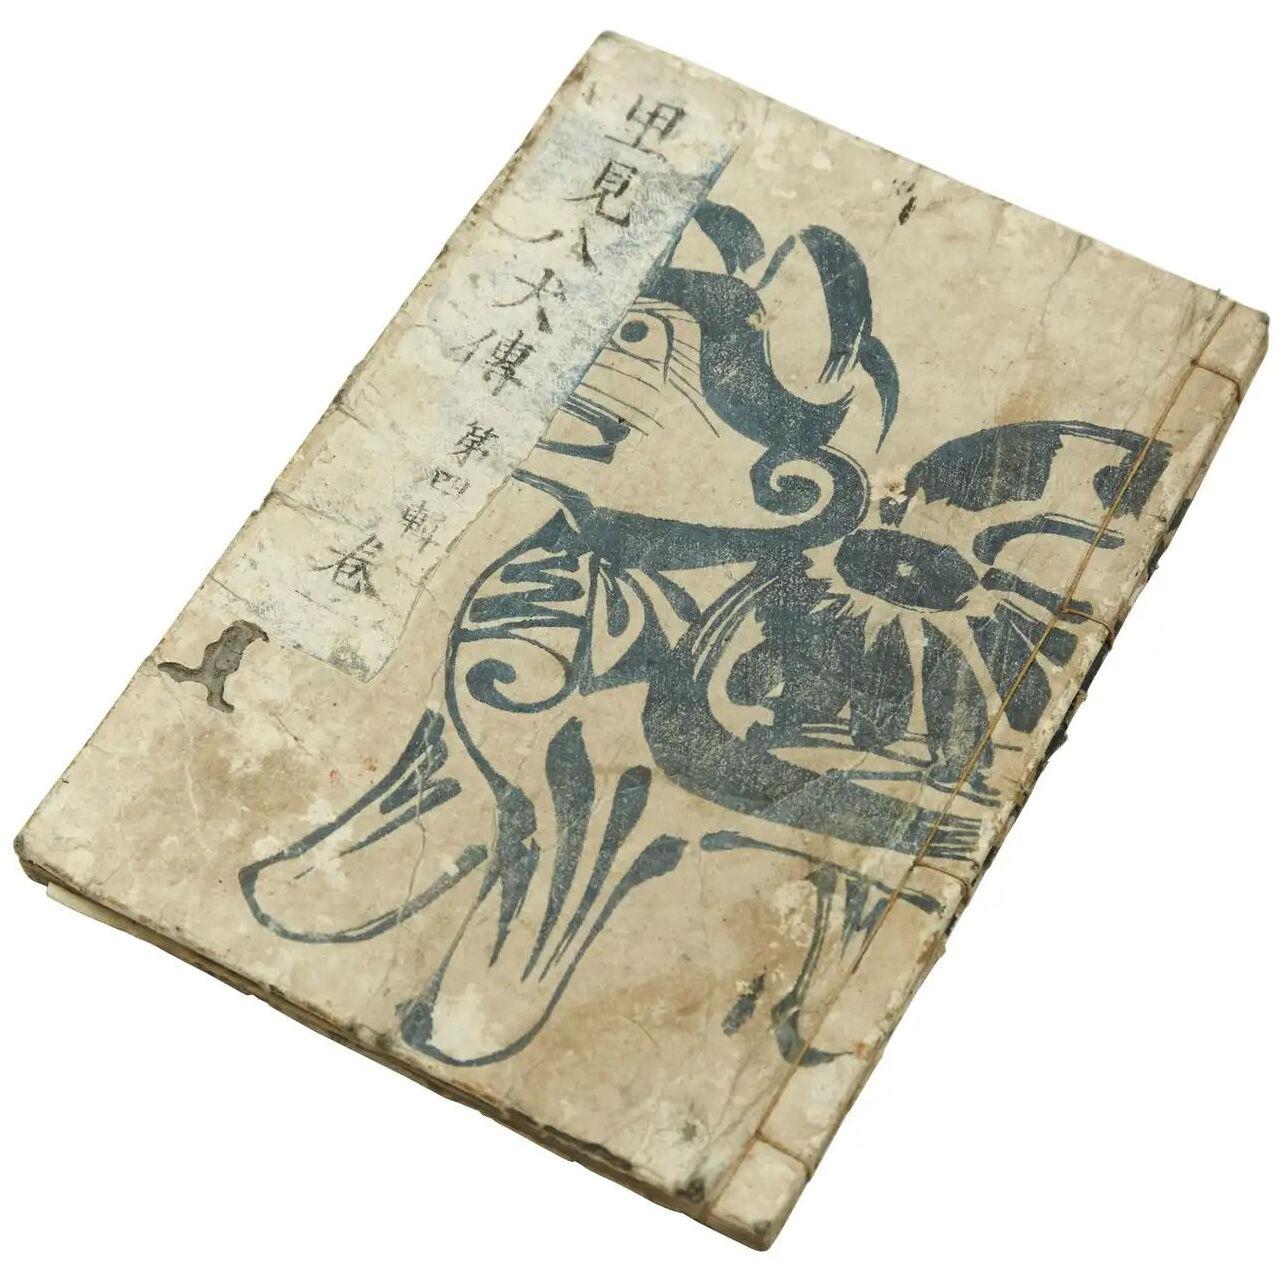 Antique Japanese Epic Novel Book Edo Period, circa 1820